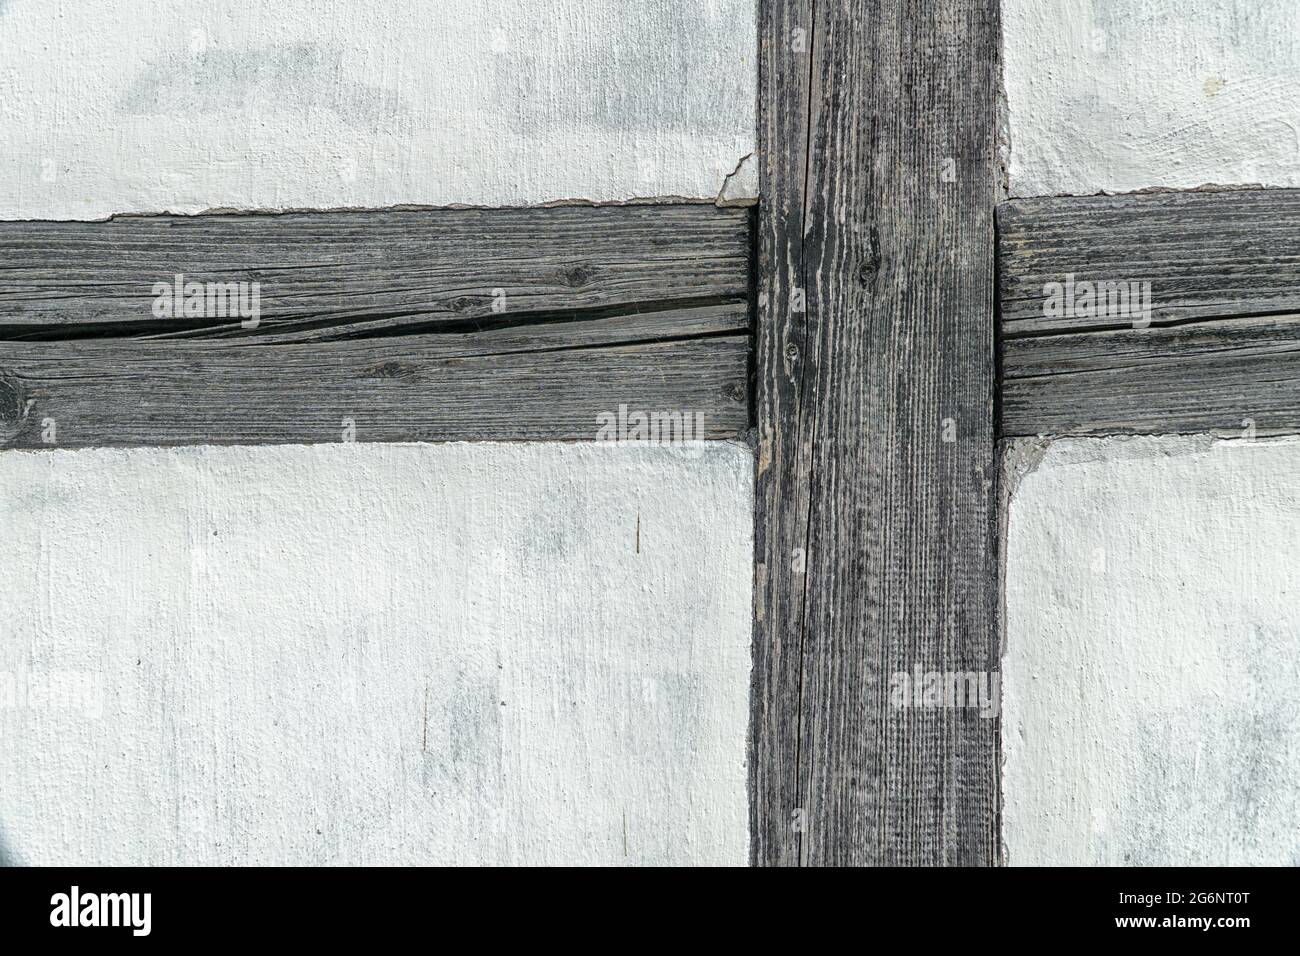 Particolare della parete del telaio in legno. Parete bianca e barre scure. Foto Stock